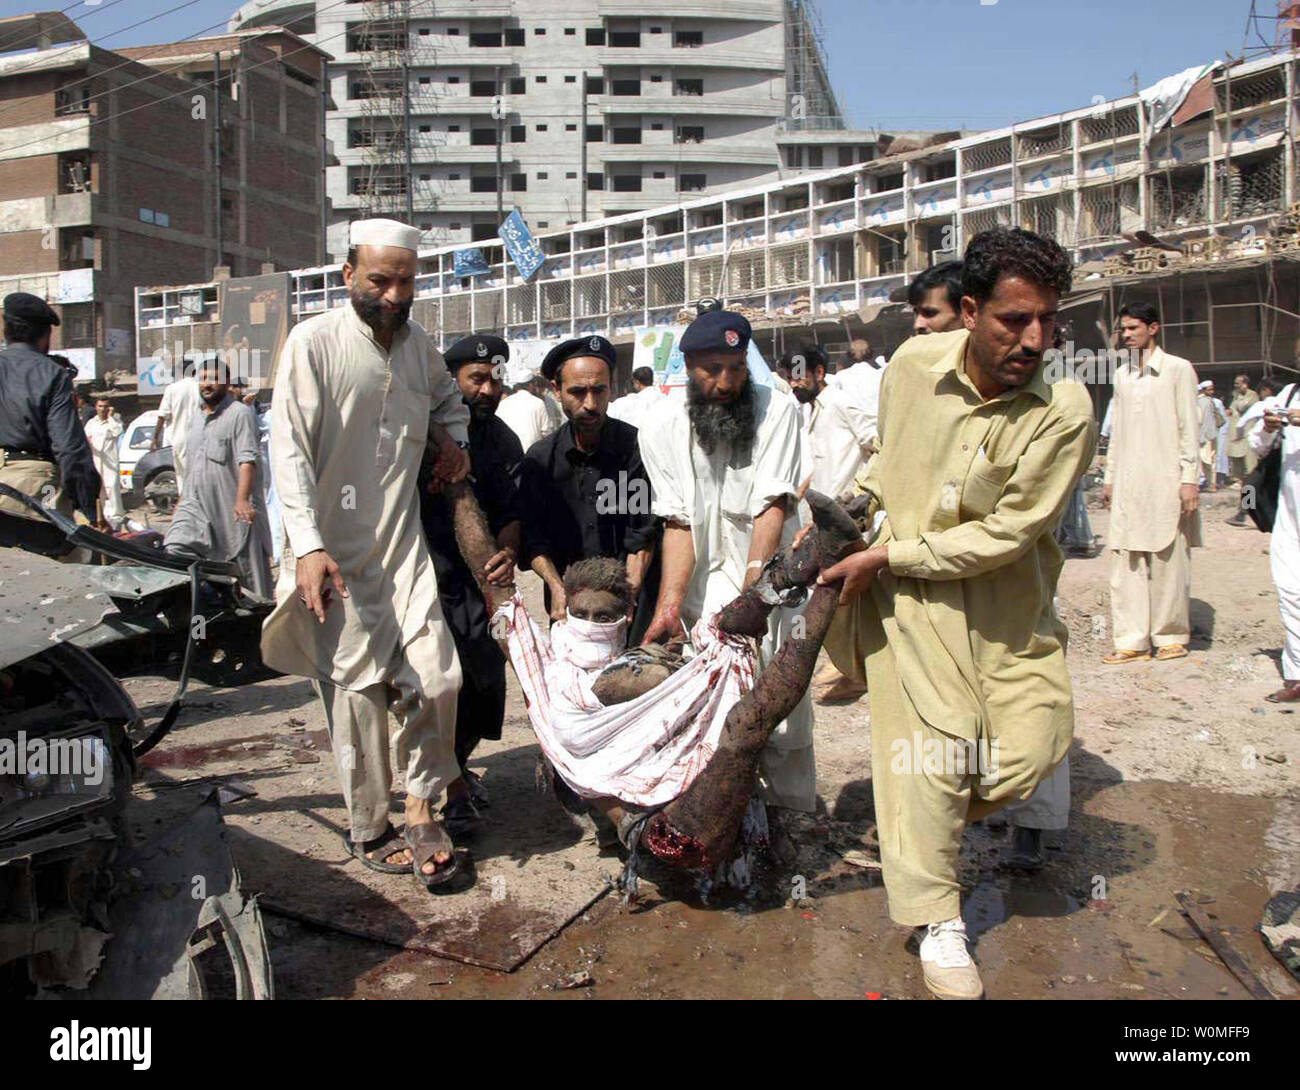 Des volontaires pakistanais transporter un blessé victime d'un attentat-suicide à la bombe à Peshawar site le 9 octobre 2009. Les véhicules de kamikazes se remplie d'explosifs, tuant 48 personnes dans une zone encombrée près des banques, des magasins et une salle de mariage heures après une attaque similaire à l'extérieur d'un poste de police à Bannu. UPI/Fahim Ahmed Banque D'Images